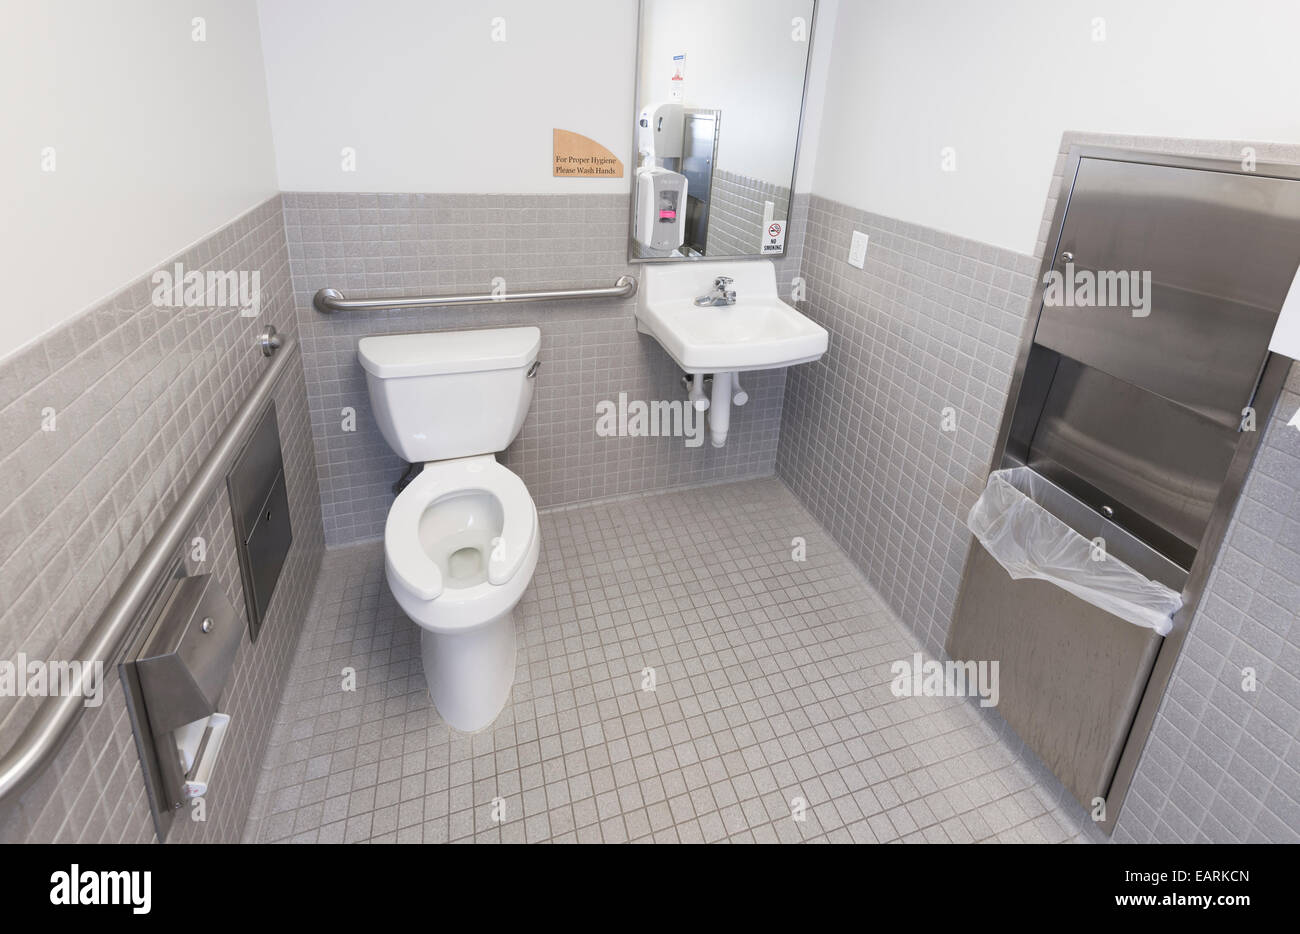 Toilettes dans salle de bains publique Banque D'Images